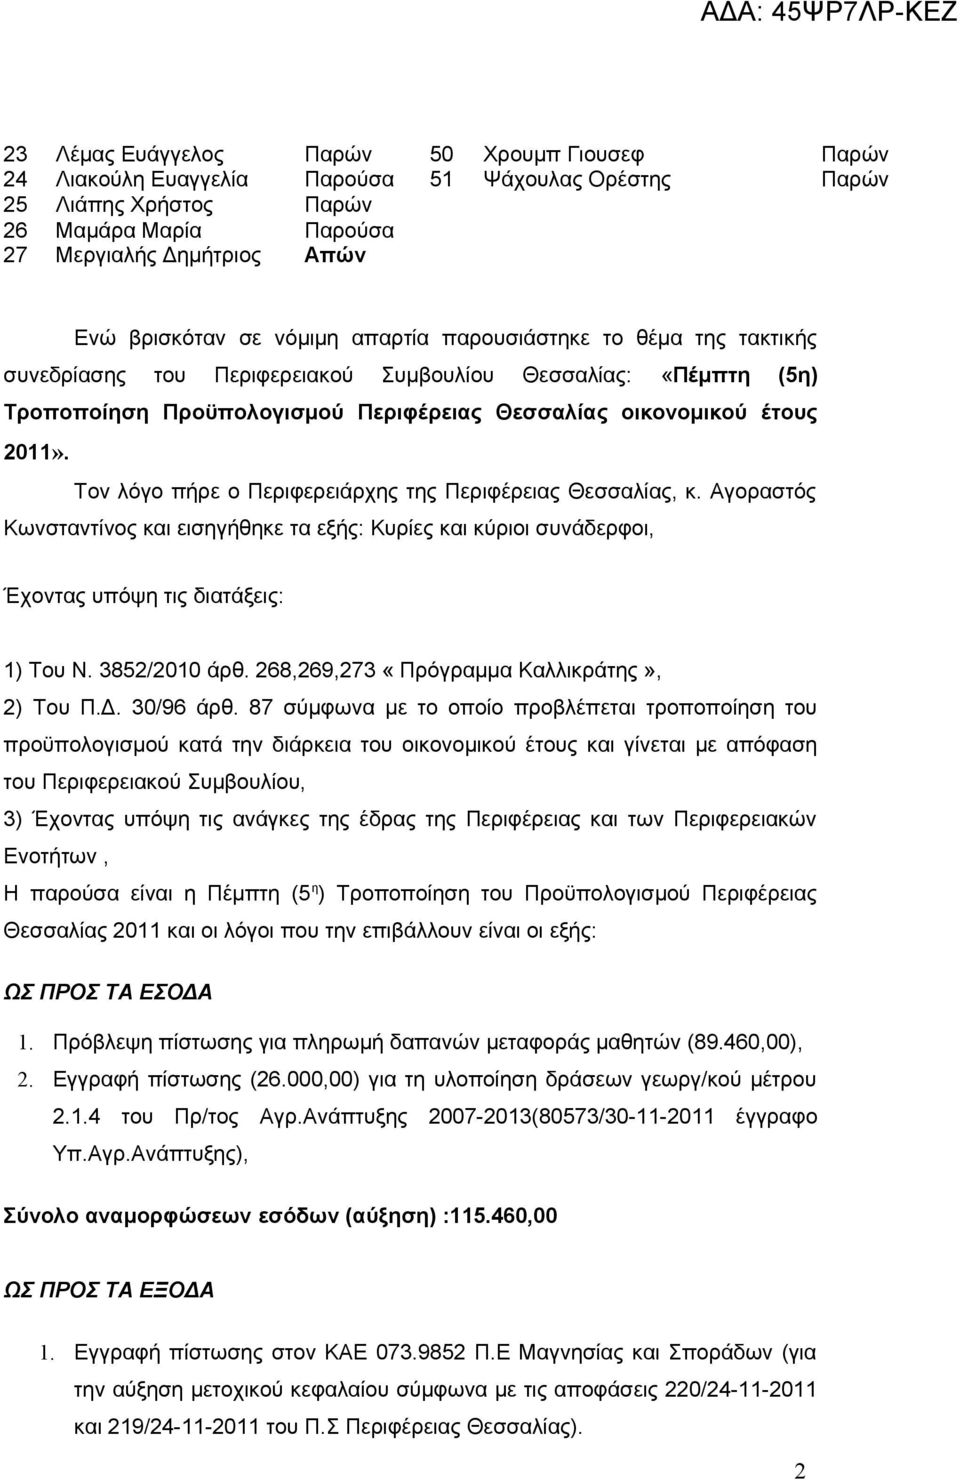 Τον λόγο πήρε ο Περιφερειάρχης της Περιφέρειας Θεσσαλίας, κ. Αγοραστός Κωνσταντίνος και εισηγήθηκε τα εξής: Κυρίες και κύριοι συνάδερφοι, Έχοντας υπόψη τις διατάξεις: 1) Του Ν. 3852/2010 άρθ.